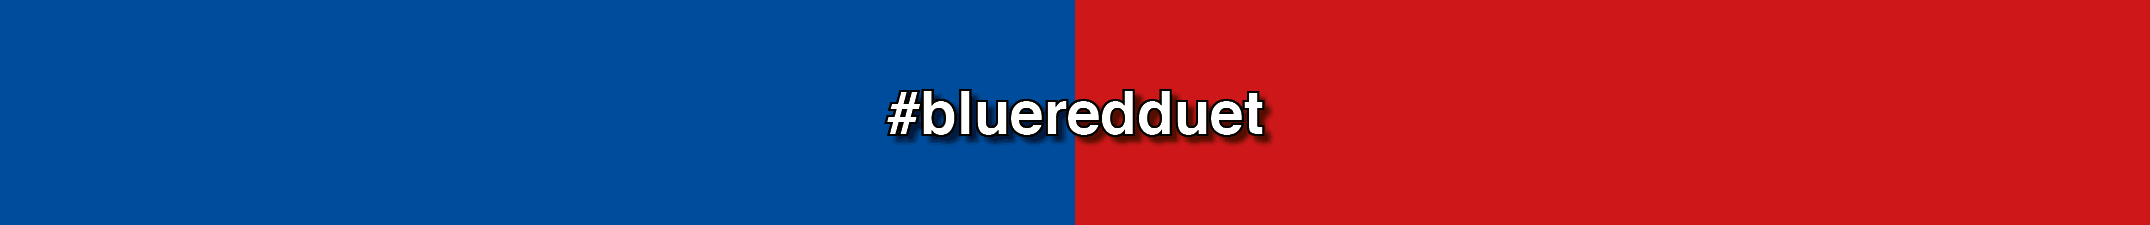 Blueredduet banner